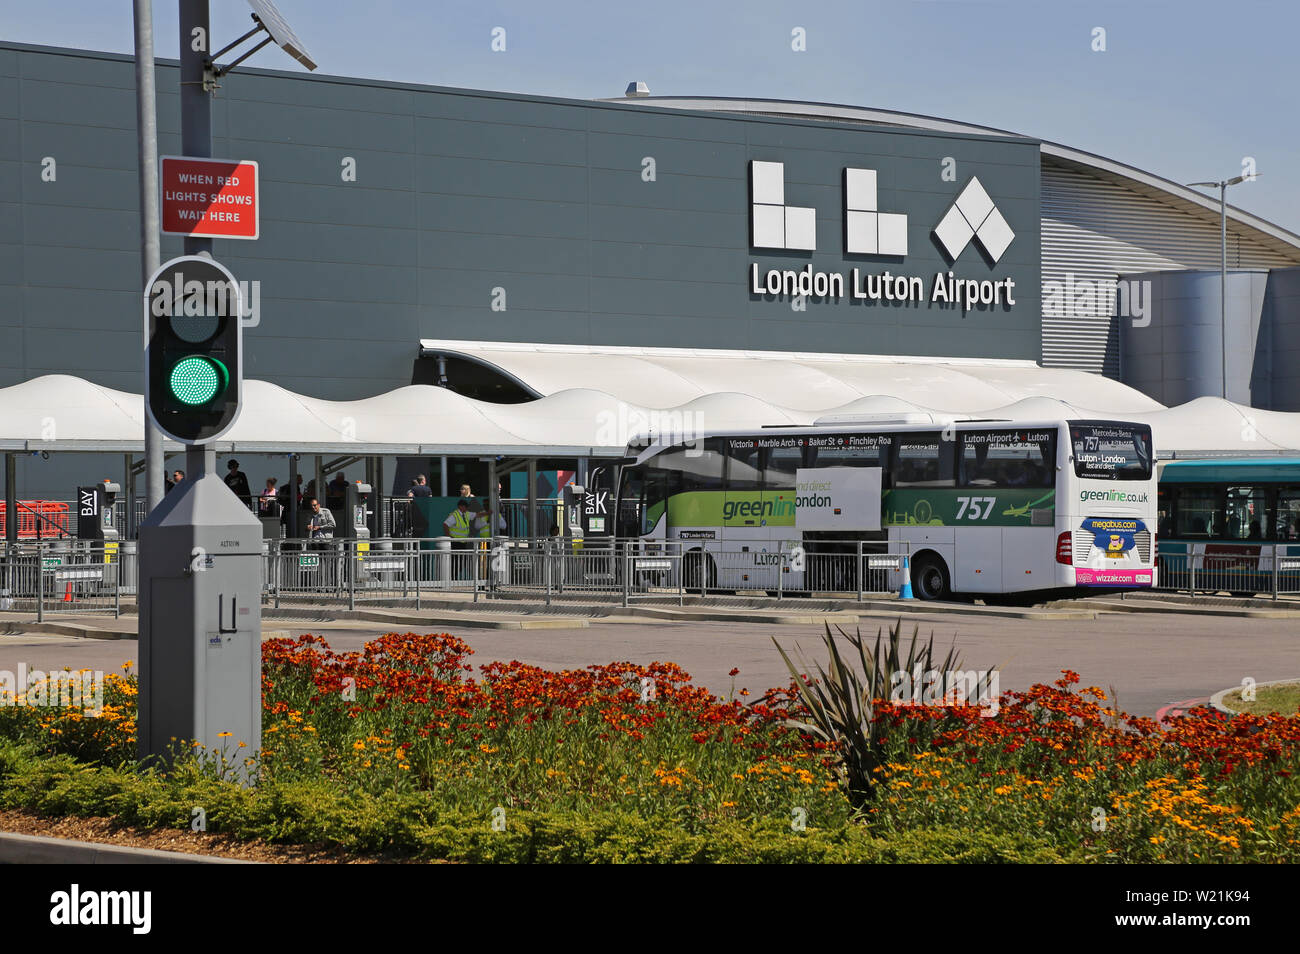 Dall' Aeroporto di Luton a Londra. Il passeggero drop-off, area e la stazione degli autobus di fronte all'edificio del terminal principale - con nuovo logo (estate 2019) Foto Stock